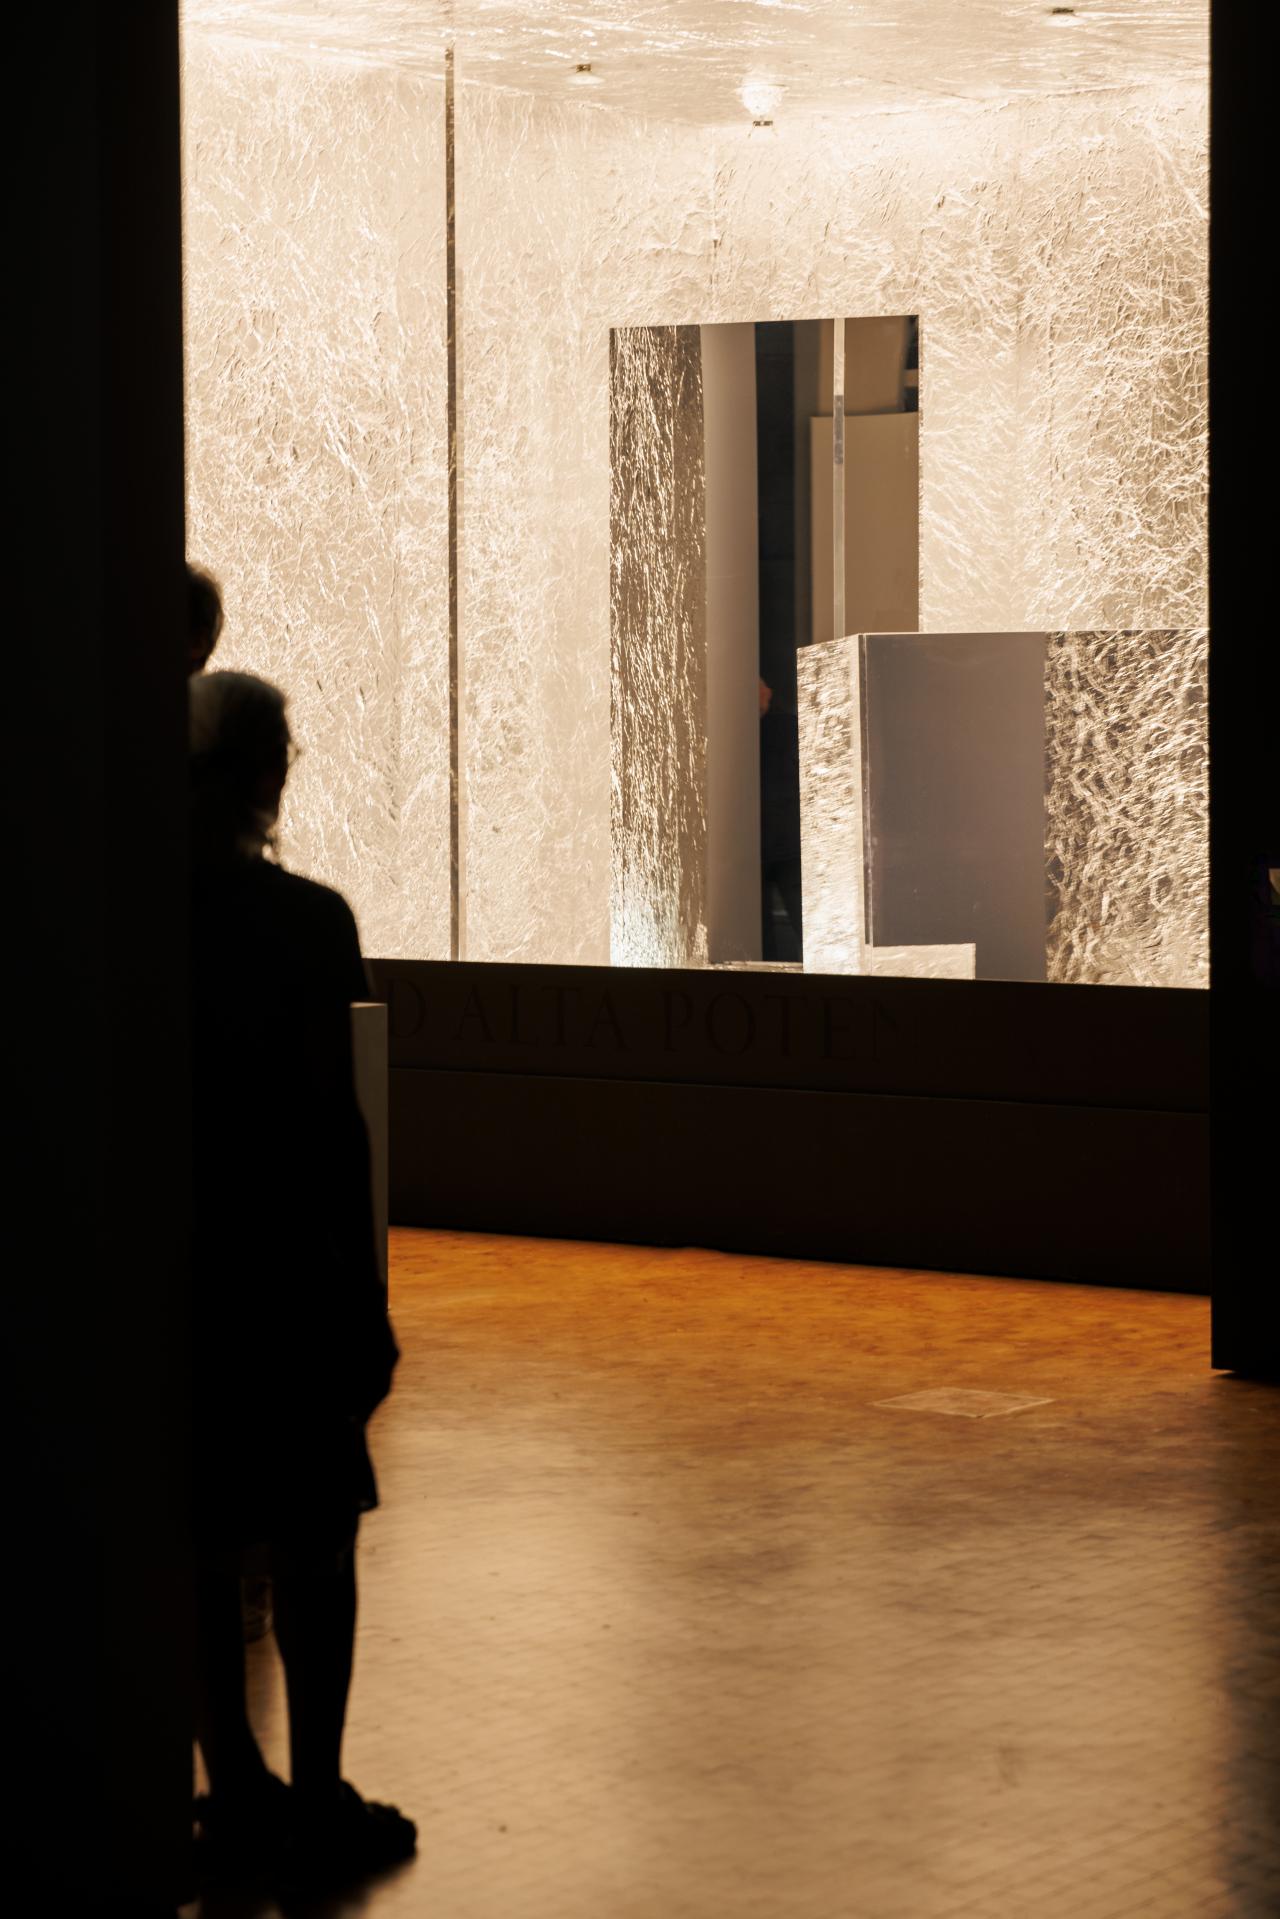 Zu sehen ist ein dunkler Raum, in dem ein helles Kunstwerk steht, das eingelassen in die Wand erscheint und durch Lichter und Spiegel hell ausgeleuchtet wird.